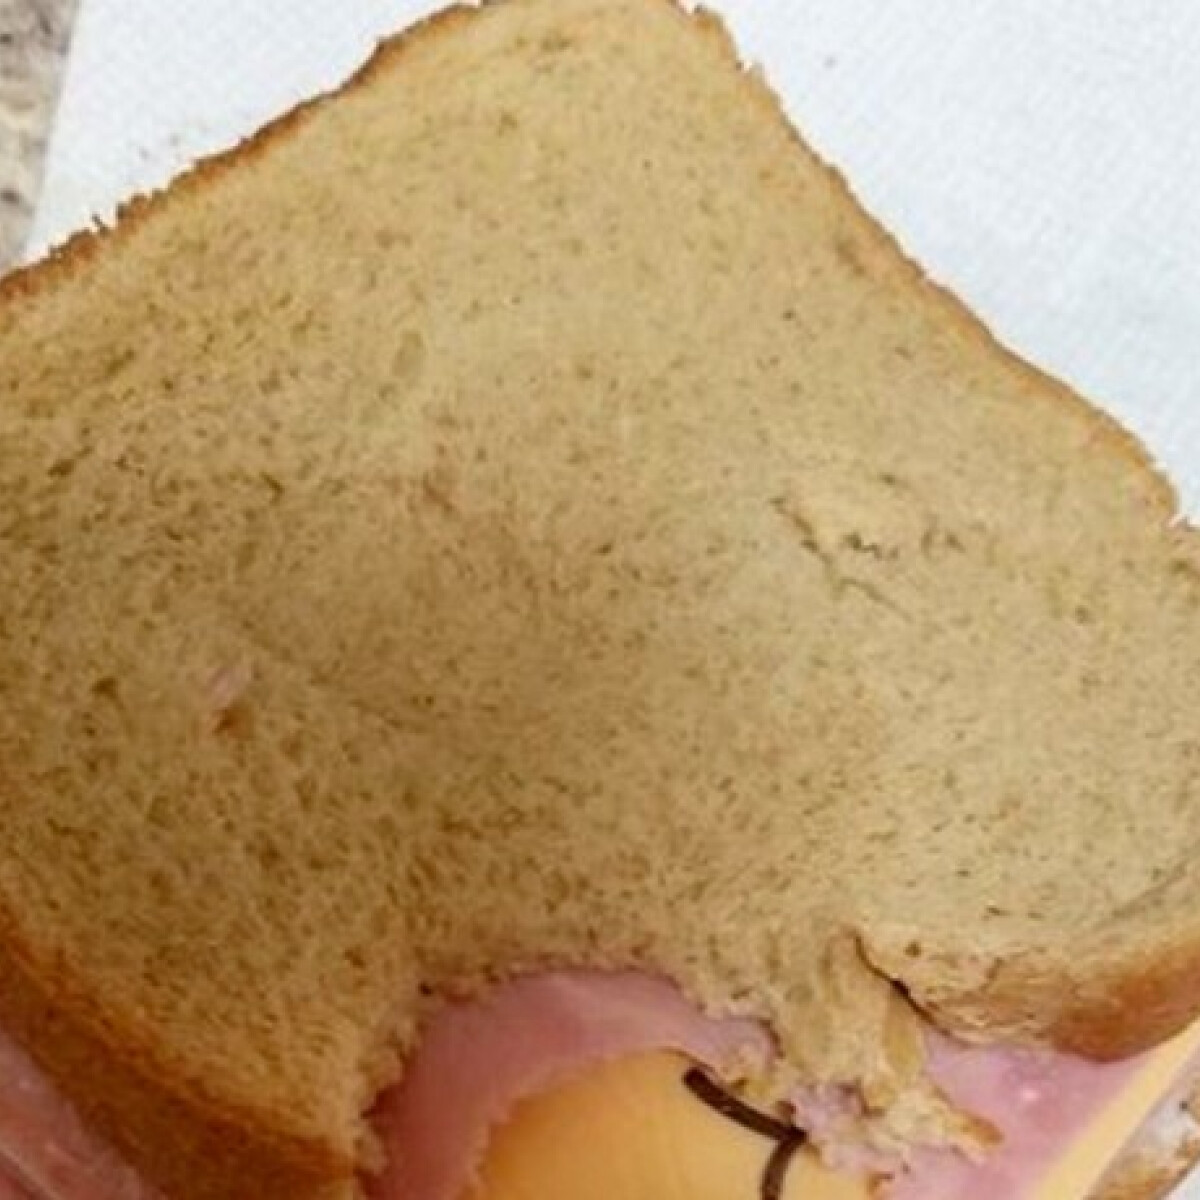 Imádják az internetezők a feleséget, aki bosszút állt férjén, mert gúnyosan "szendvicskészítőnek" hívta nejét